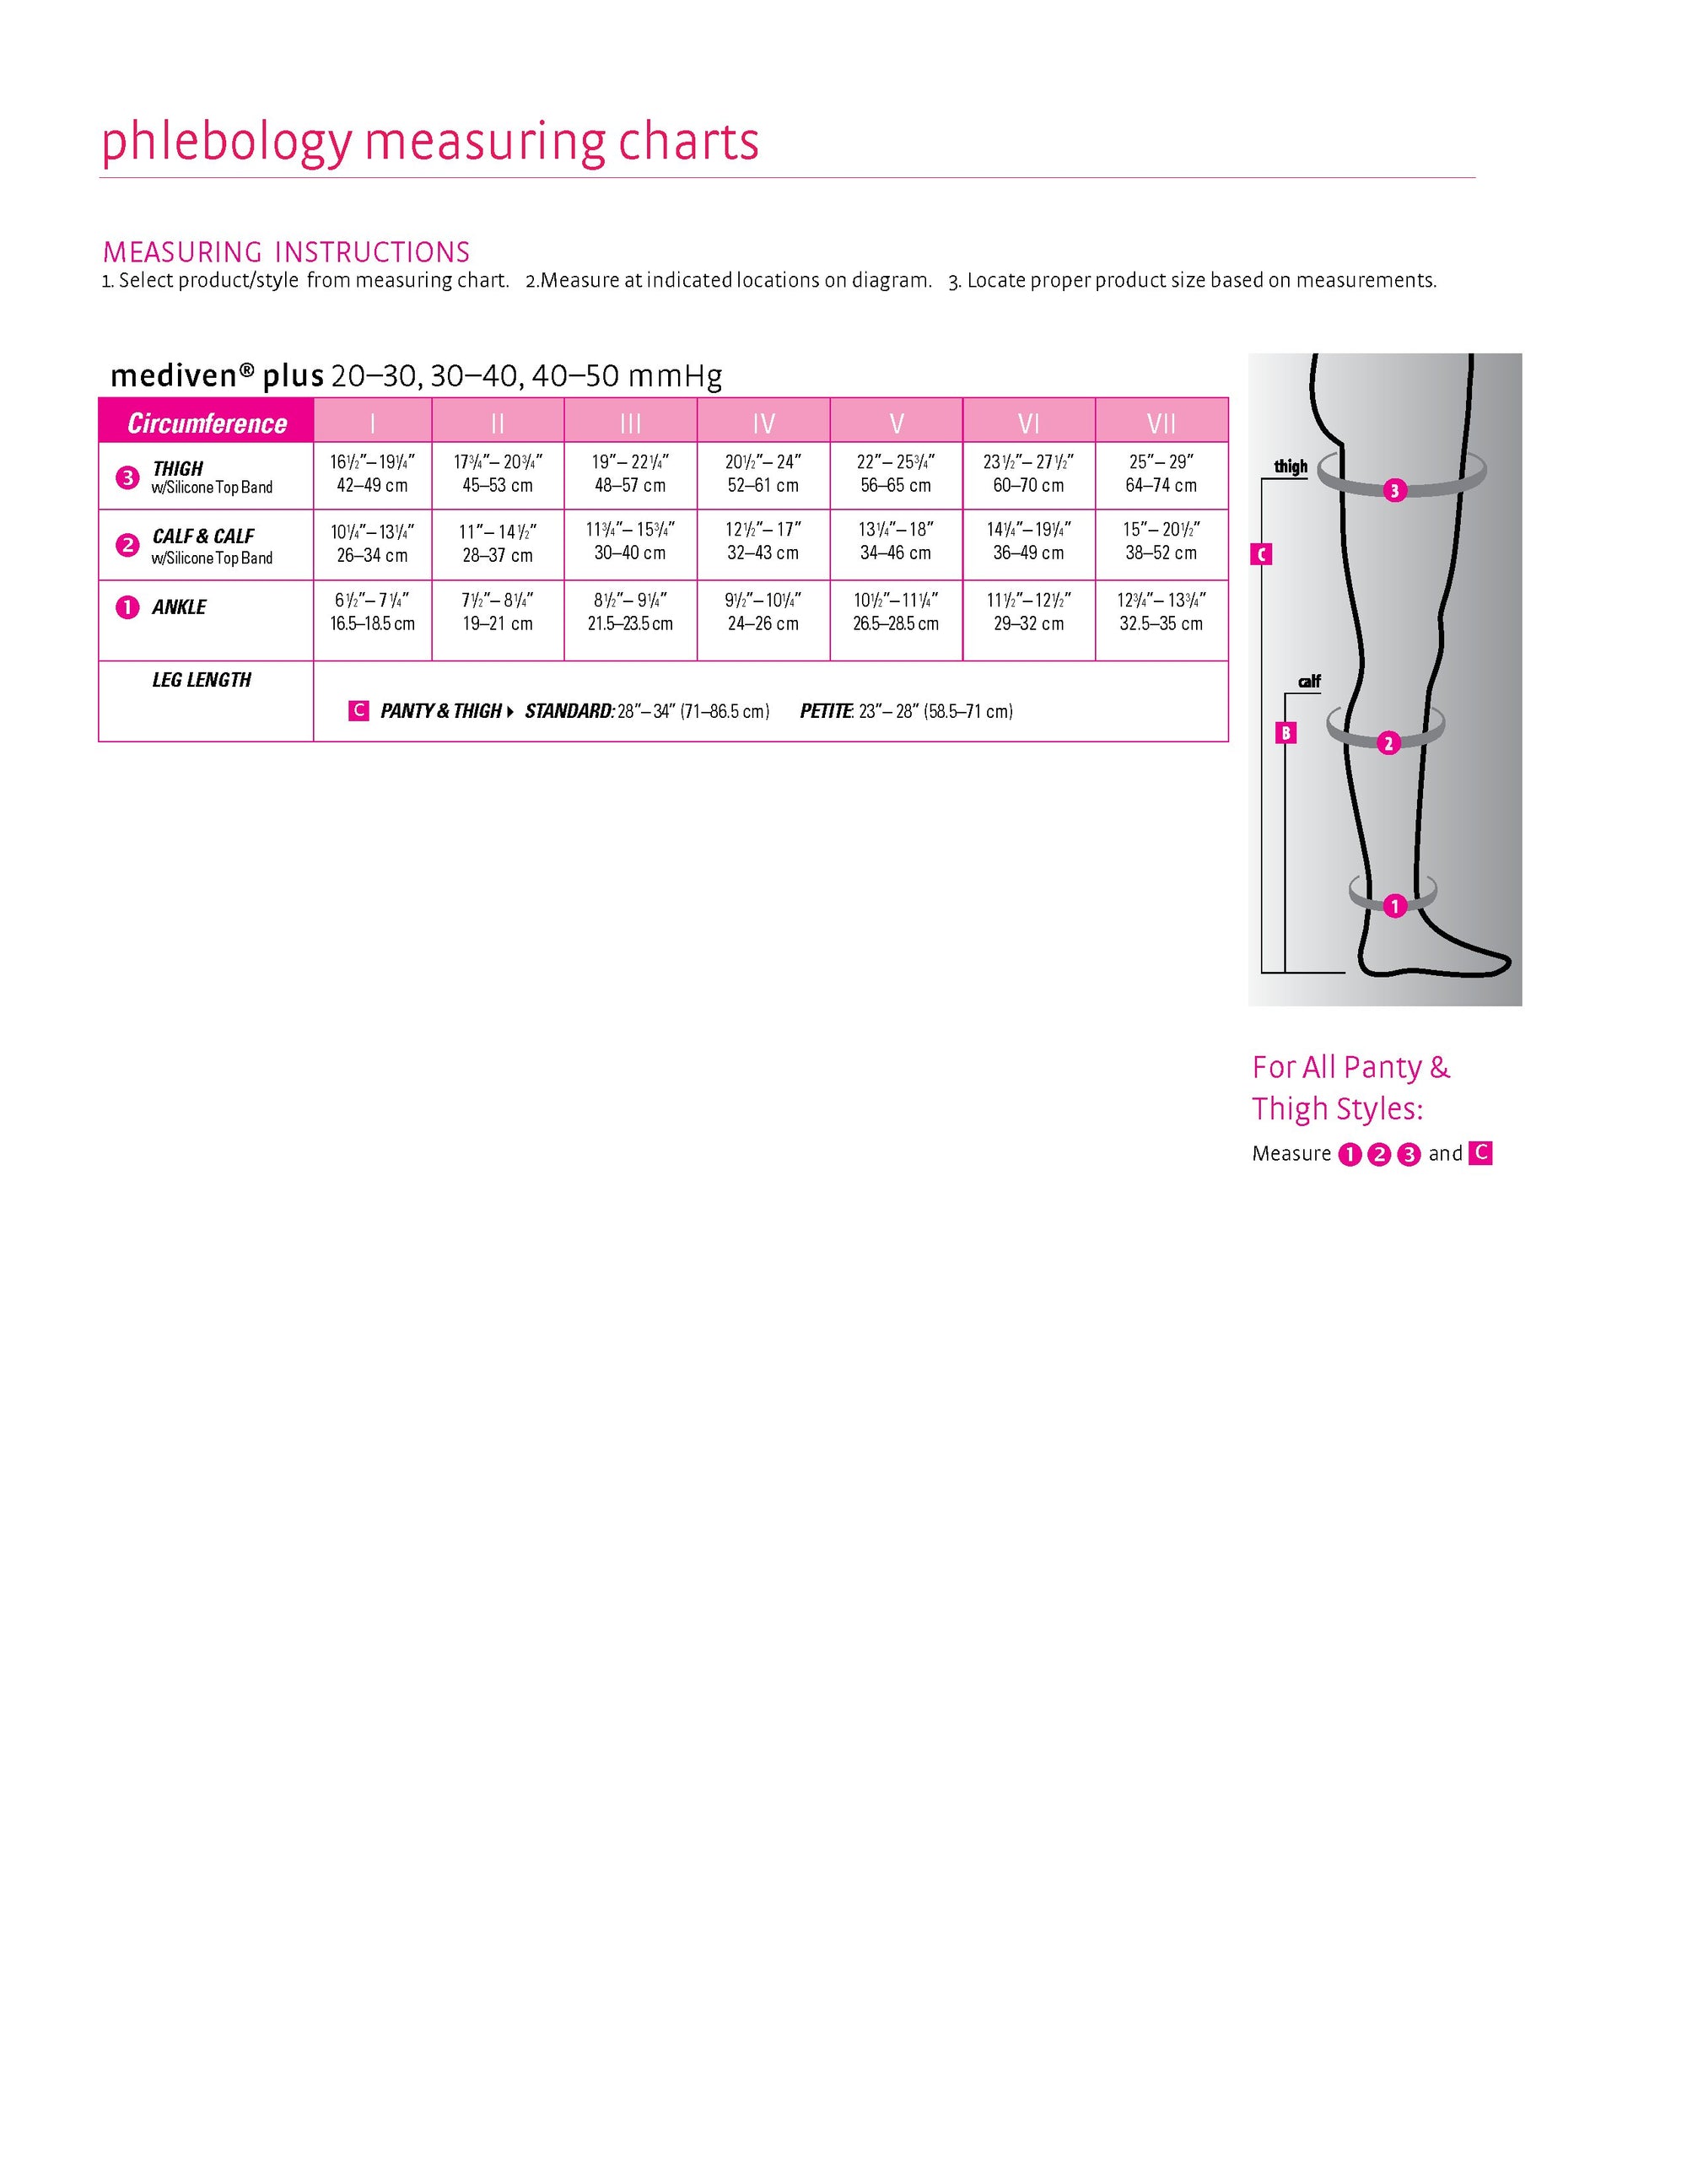 mediven plus for Men & Women, 30-40 mmHg Calf w/Silicone Top Band Open Toe  Compression Stockings, Black, III-Petite 